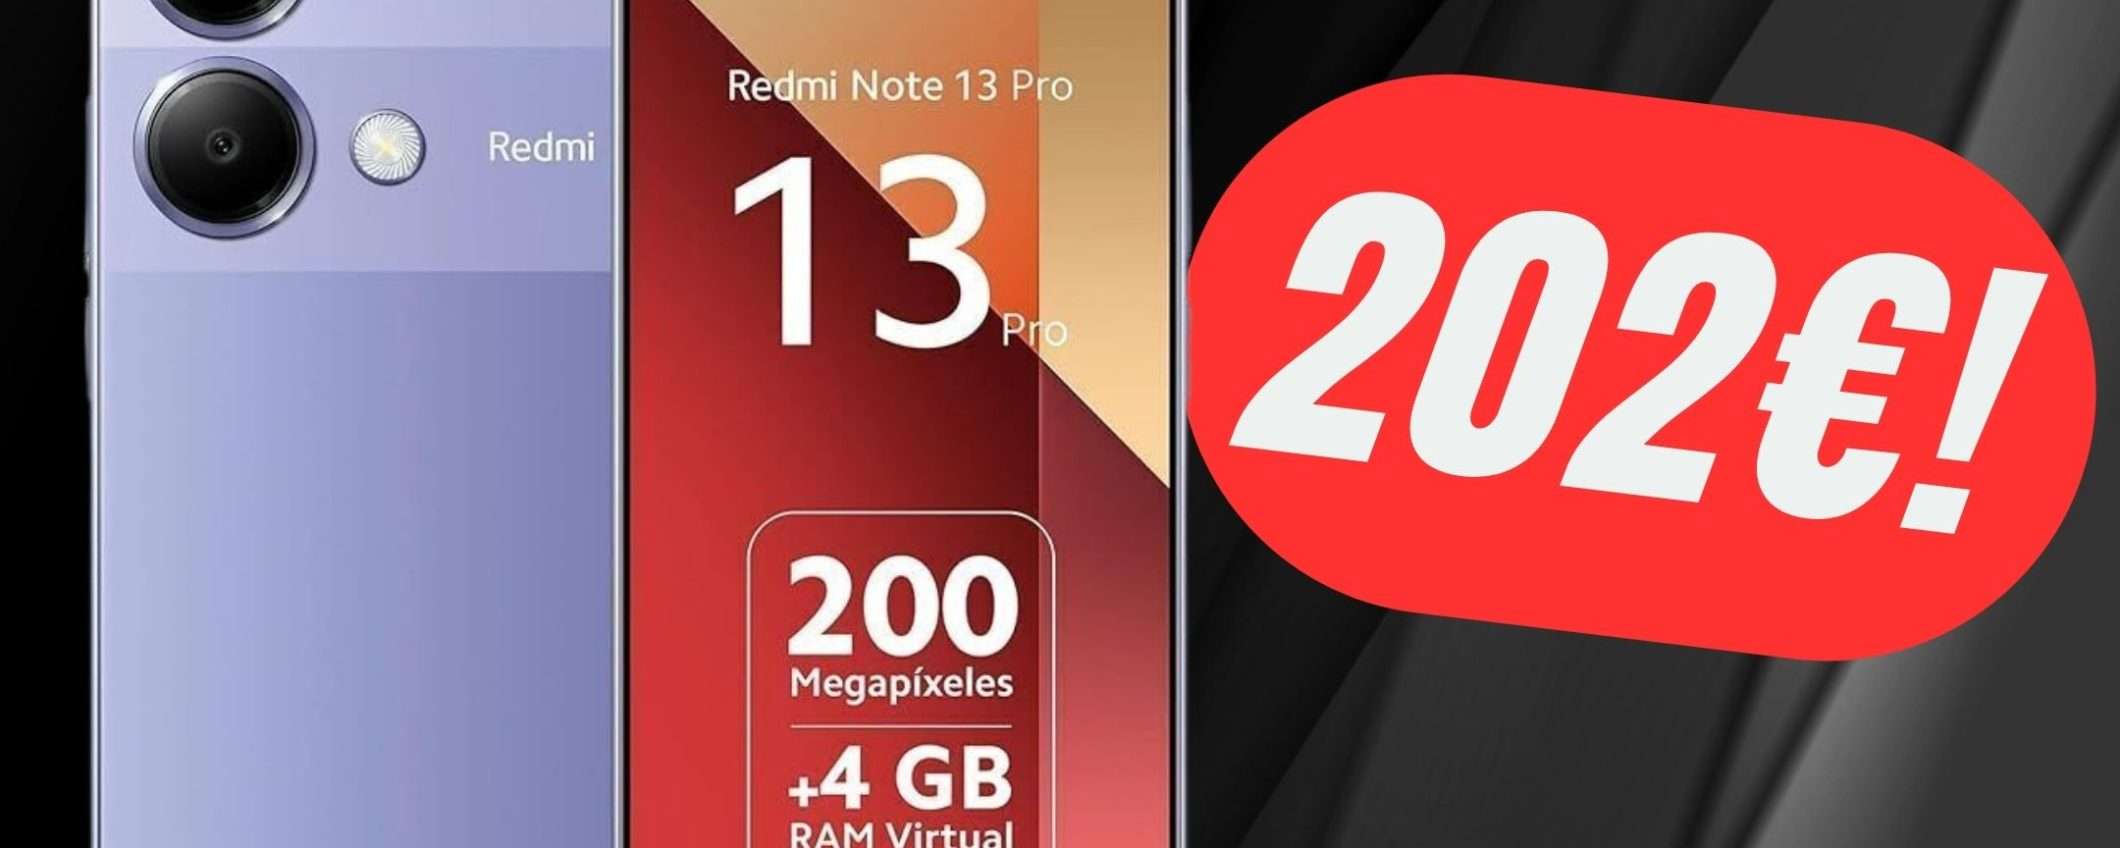 Xiaomi Redmi Note 13 Pro a 202€ è la BOMBA NOTTURNA di eBay!